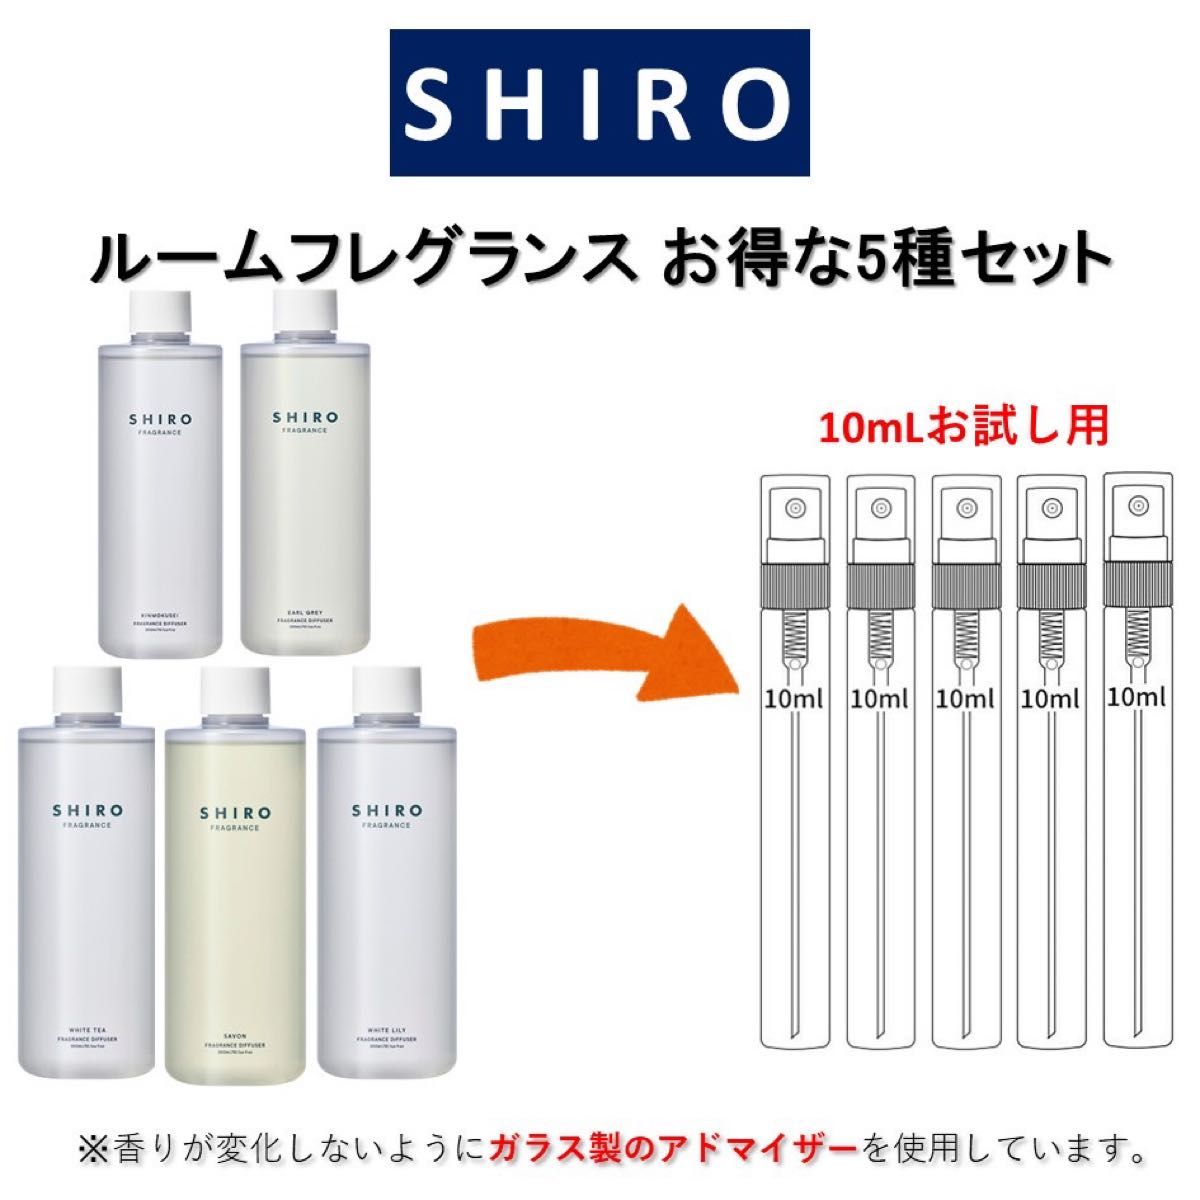 SHIRO ルームフレグランス お得な5種セット お試しサンプル (各10mL)